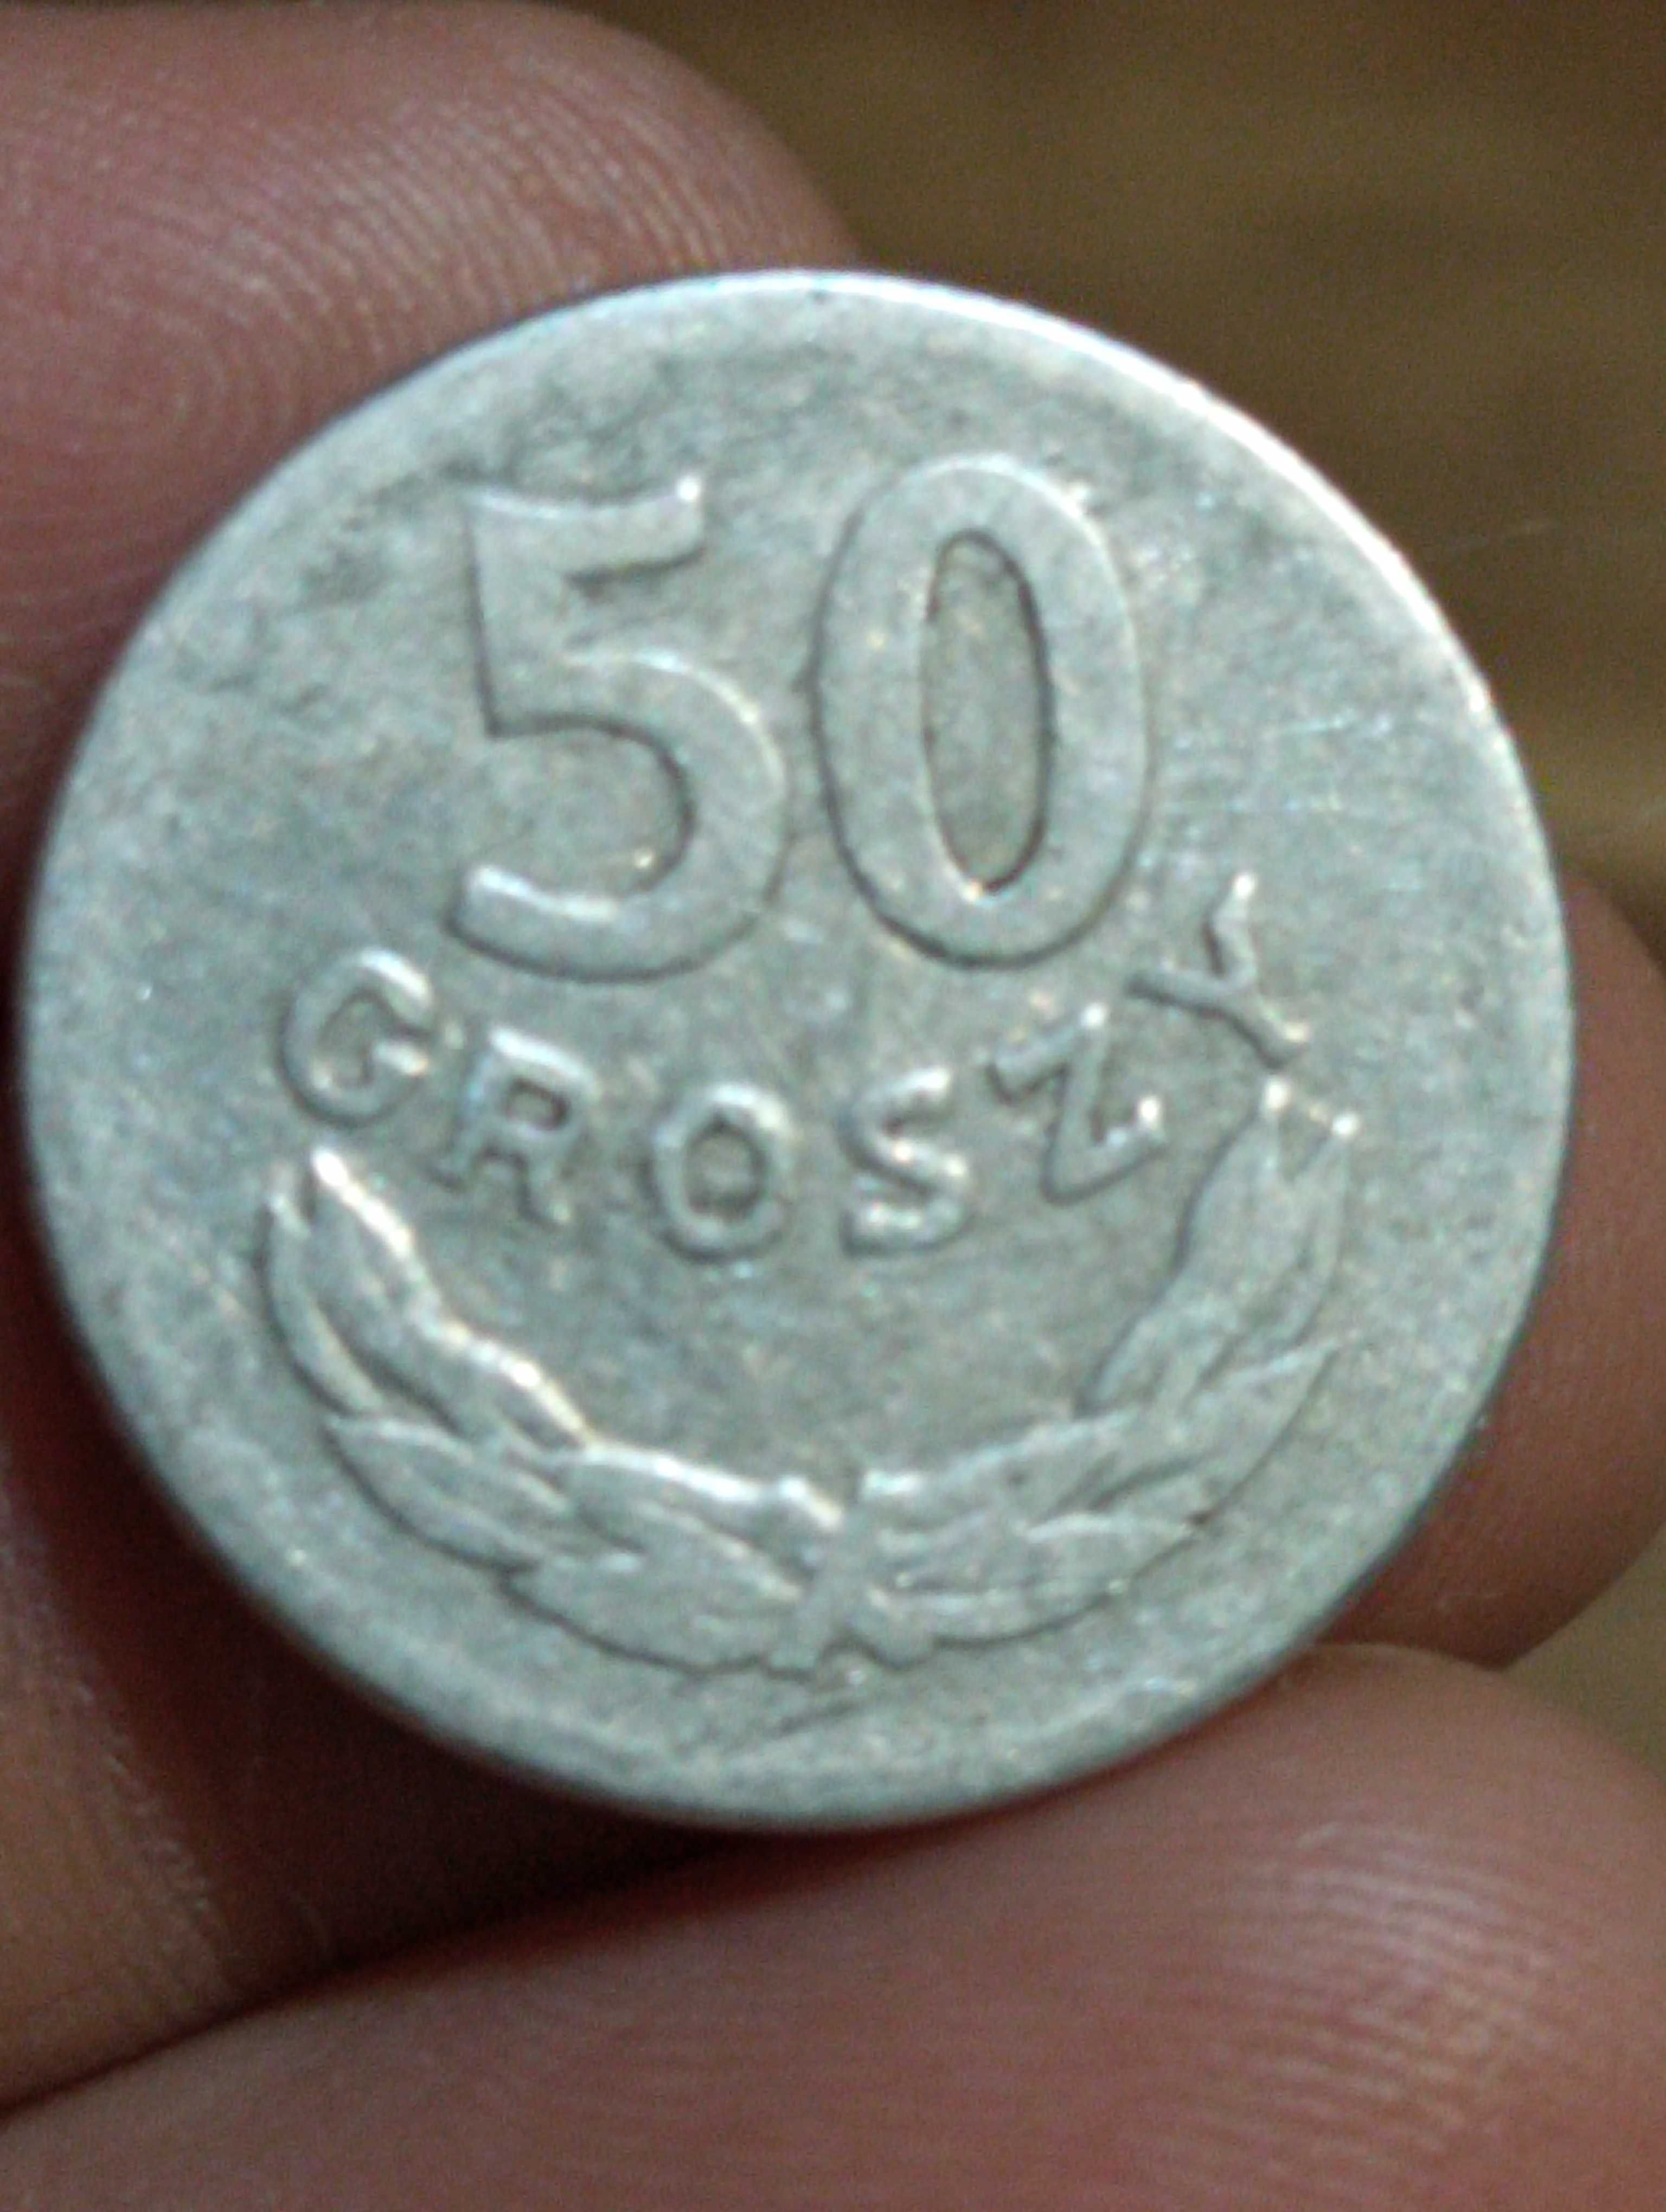 Sprzedam monete siodma 50 groszy 1965 rok